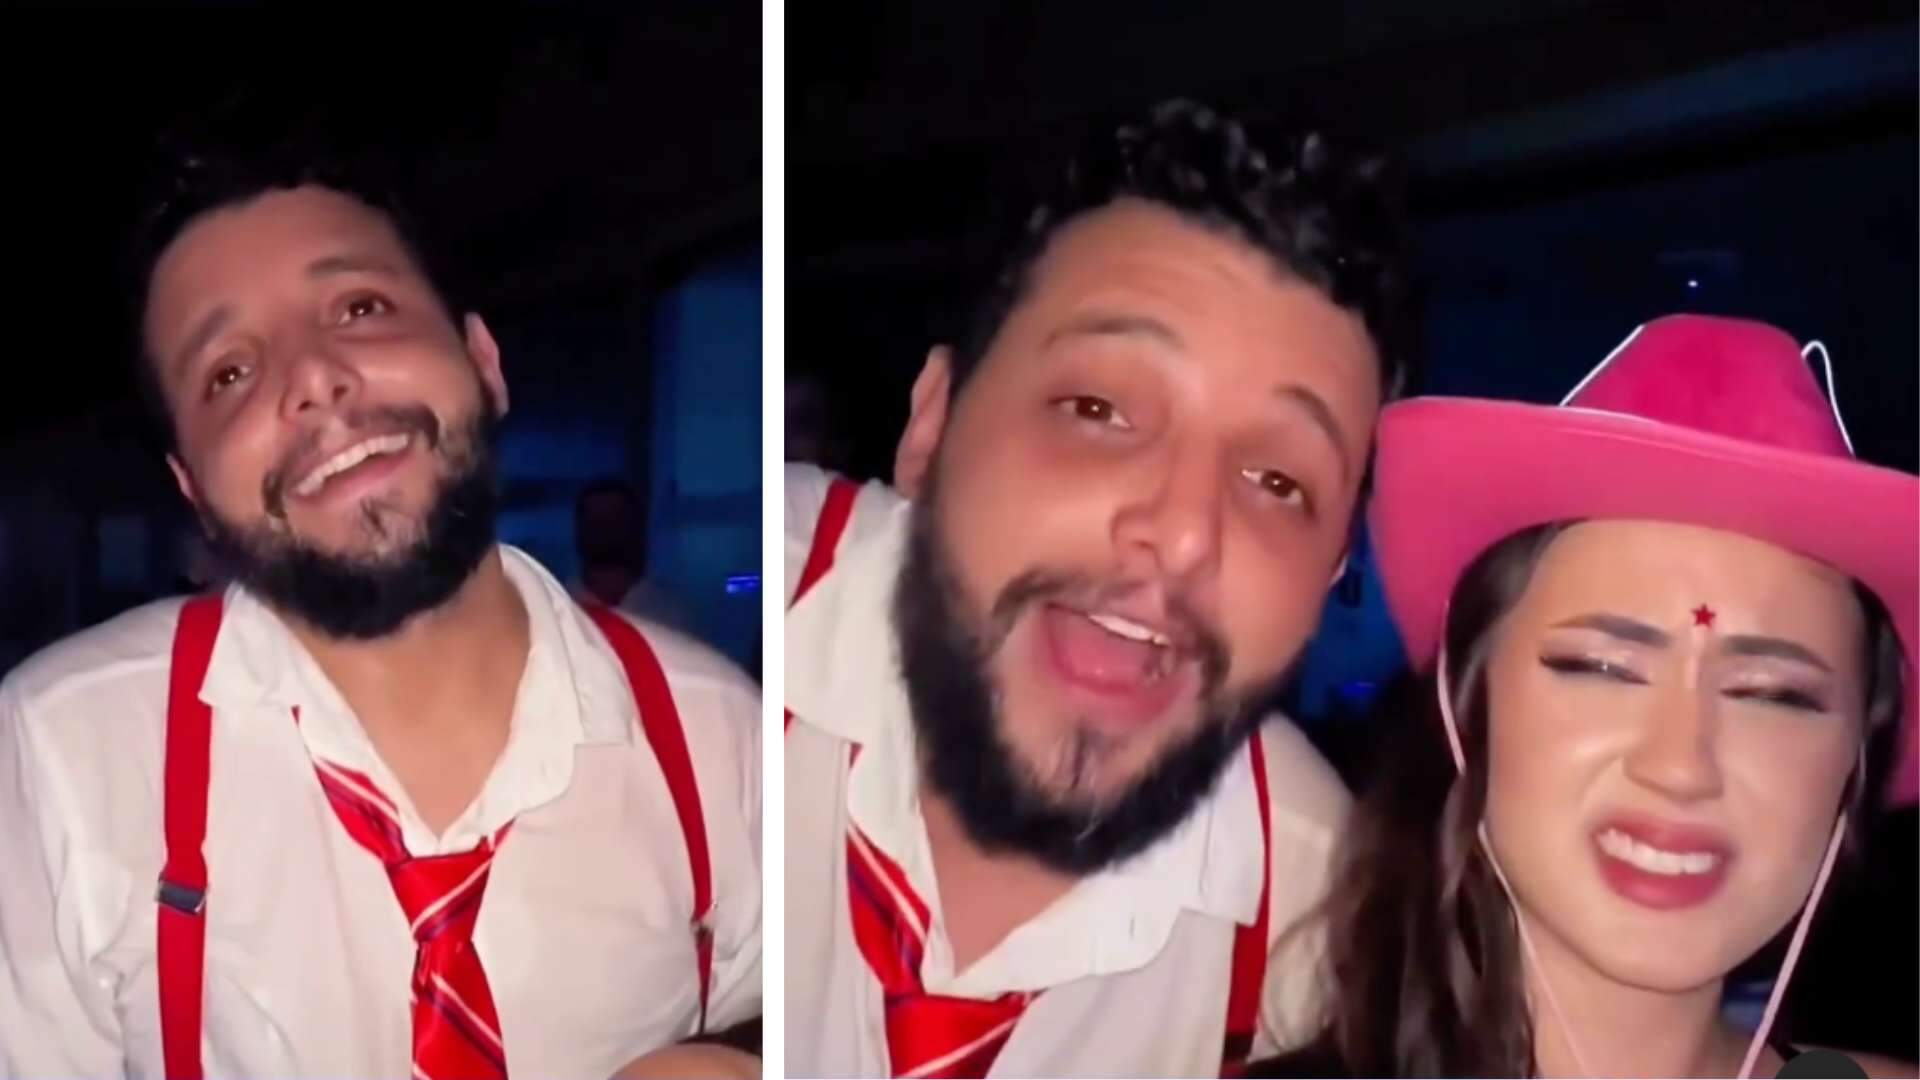 Influenciadora leva noivo em show do RBD e ele sai apaixonado por integrante do grupo - Metropolitana FM